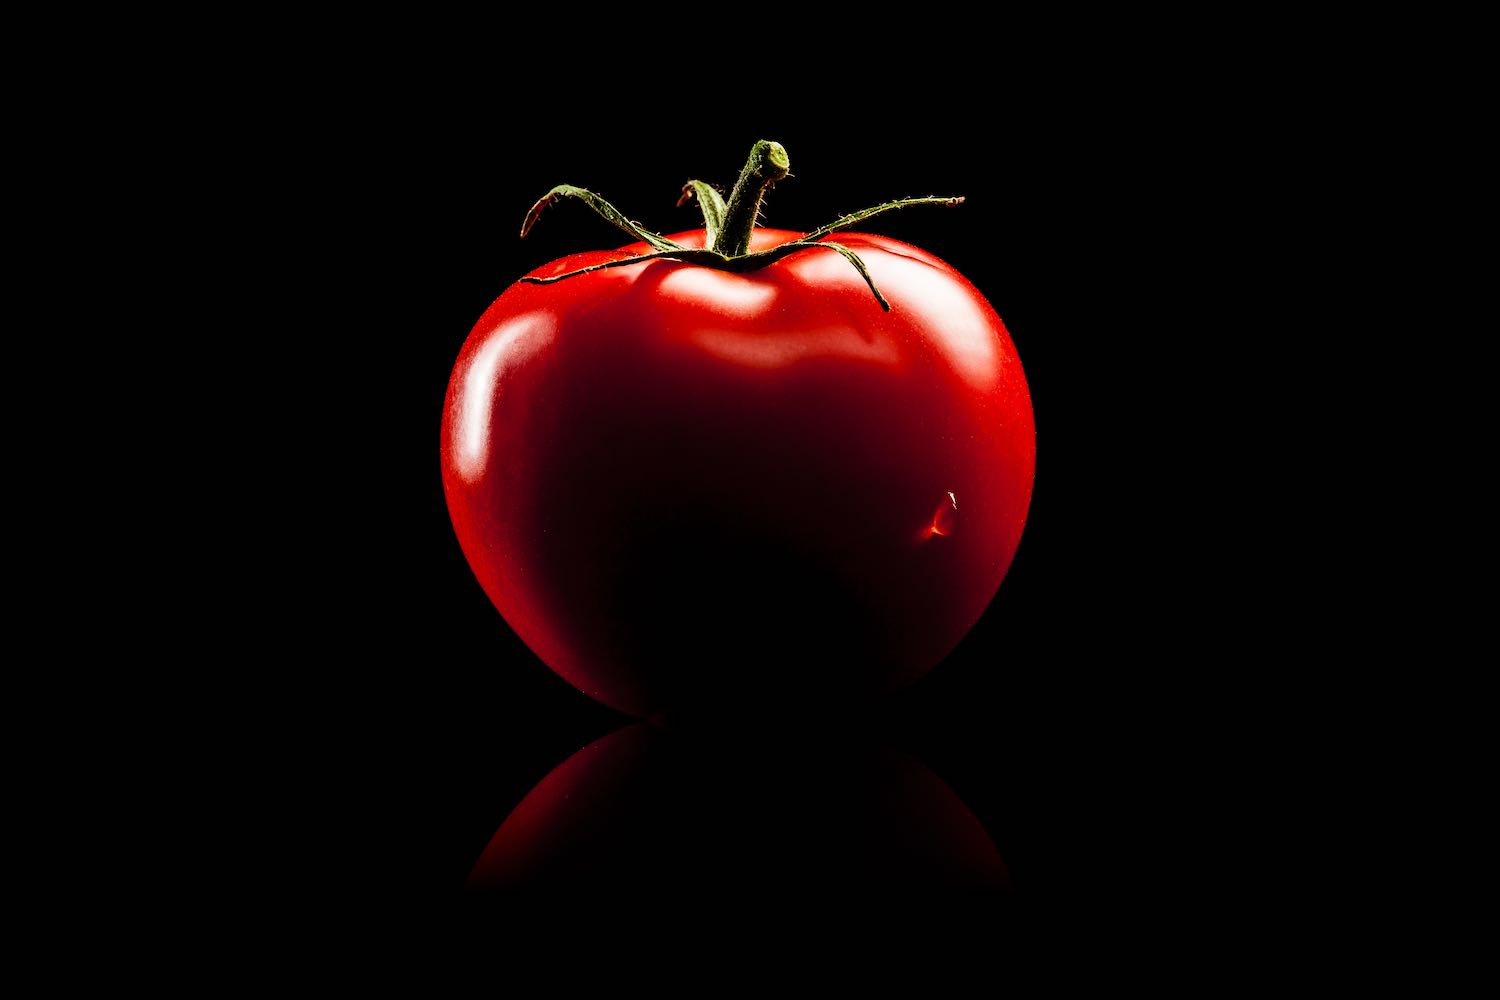 世界最高峰のトマト「光樹とまと プレミアム」糖度検査と食味で厳選された特級品